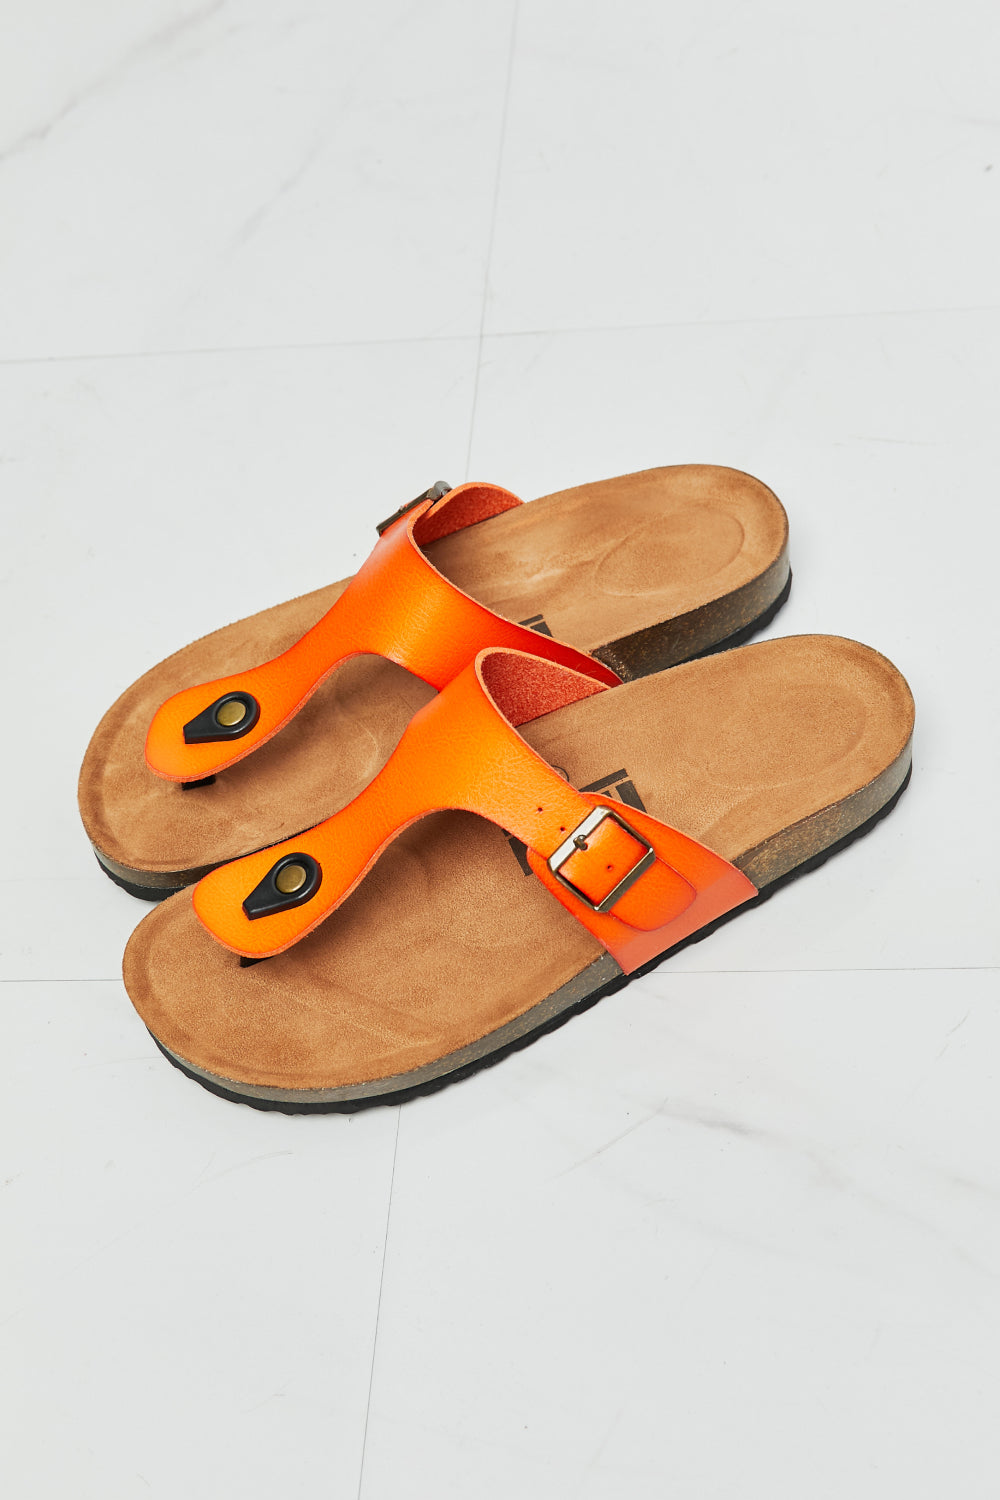 MMShoes Drift Away T-Strap Flip-Flop in Orange - FunkyPeacockStore (Store description)